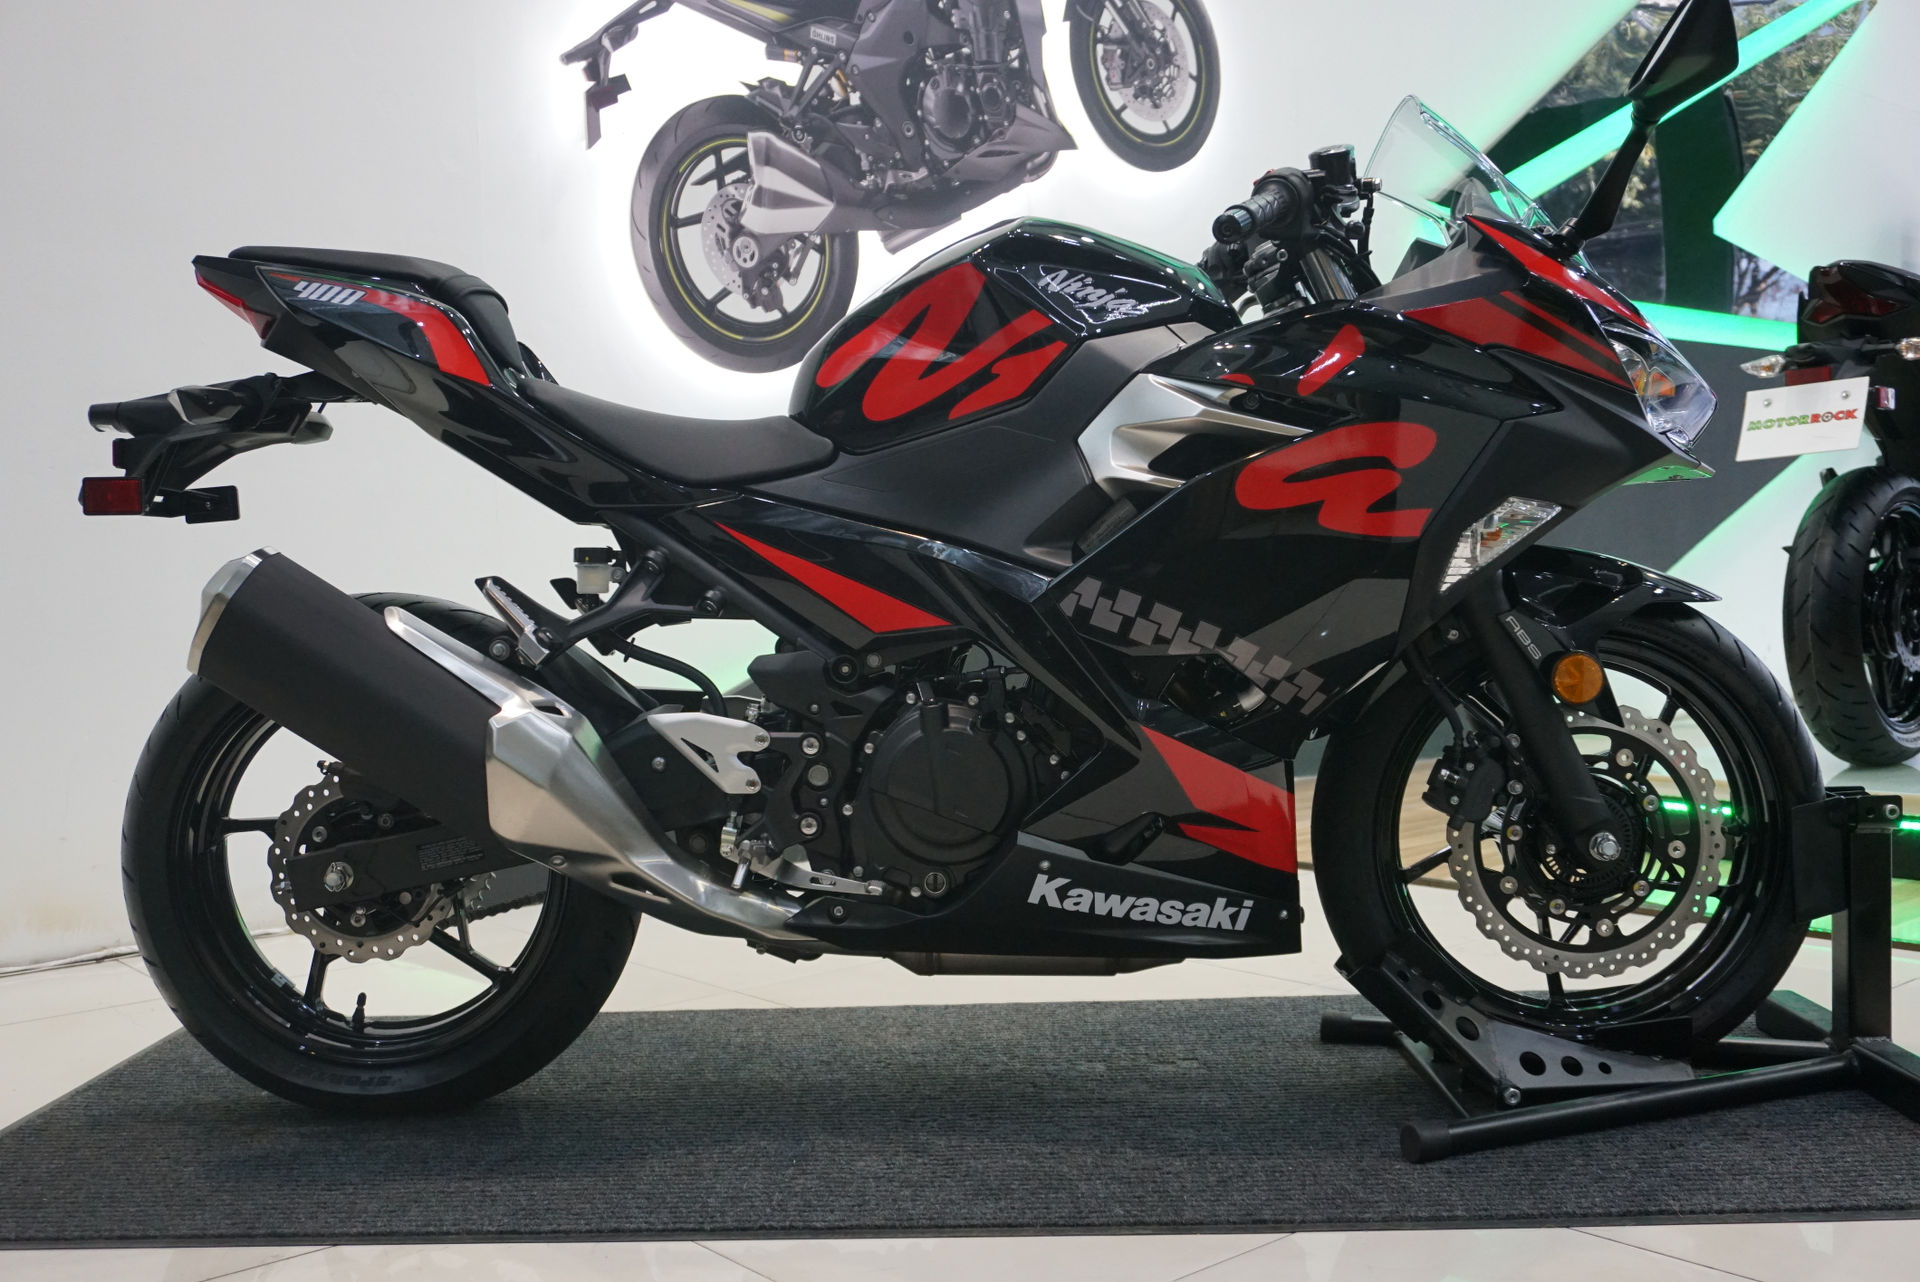 Thiết kế của Ninja 400 ABS 2019  vẫn đậm chất thể thao và mạnh mẽ, lấy cảm hứng từ đàn anh Kawasaki ZX10R và Kawasaki Ninja H2, thể hiện rõ nét ở phần đầu xe có thiết kế nhọn, bên dưới đèn pha là vỏ nhựa vuốt dài, tạo thành cánh gió.